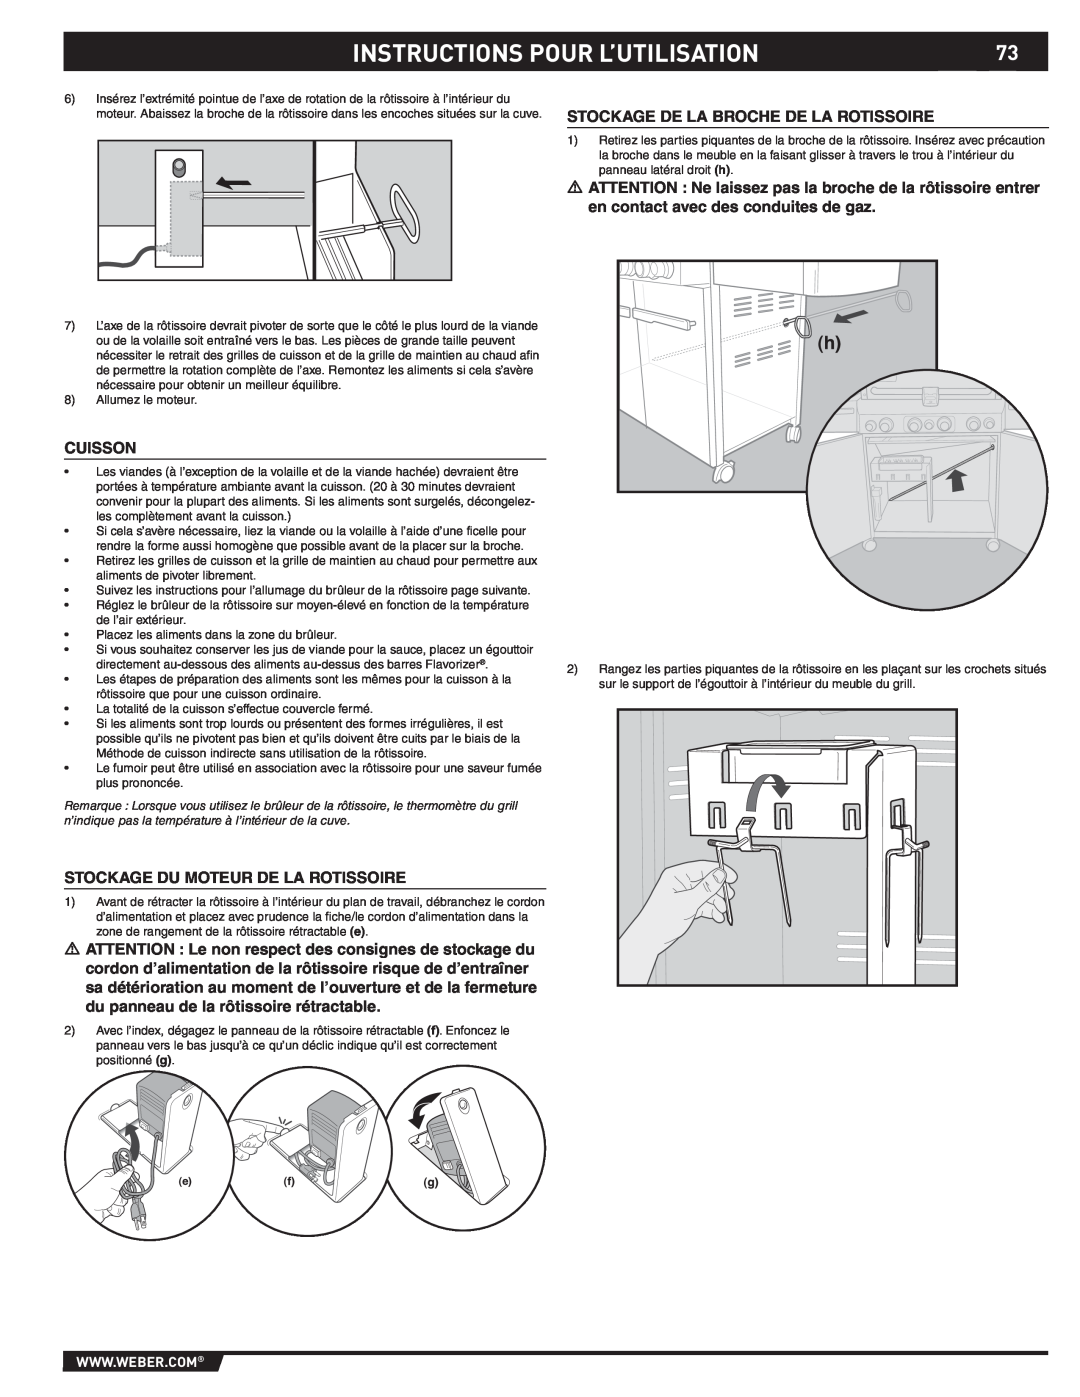 Weber S-470TM manual Instructions Pour L’Utilisation, Stockage De La Broche De La Rotissoire, Cuisson 